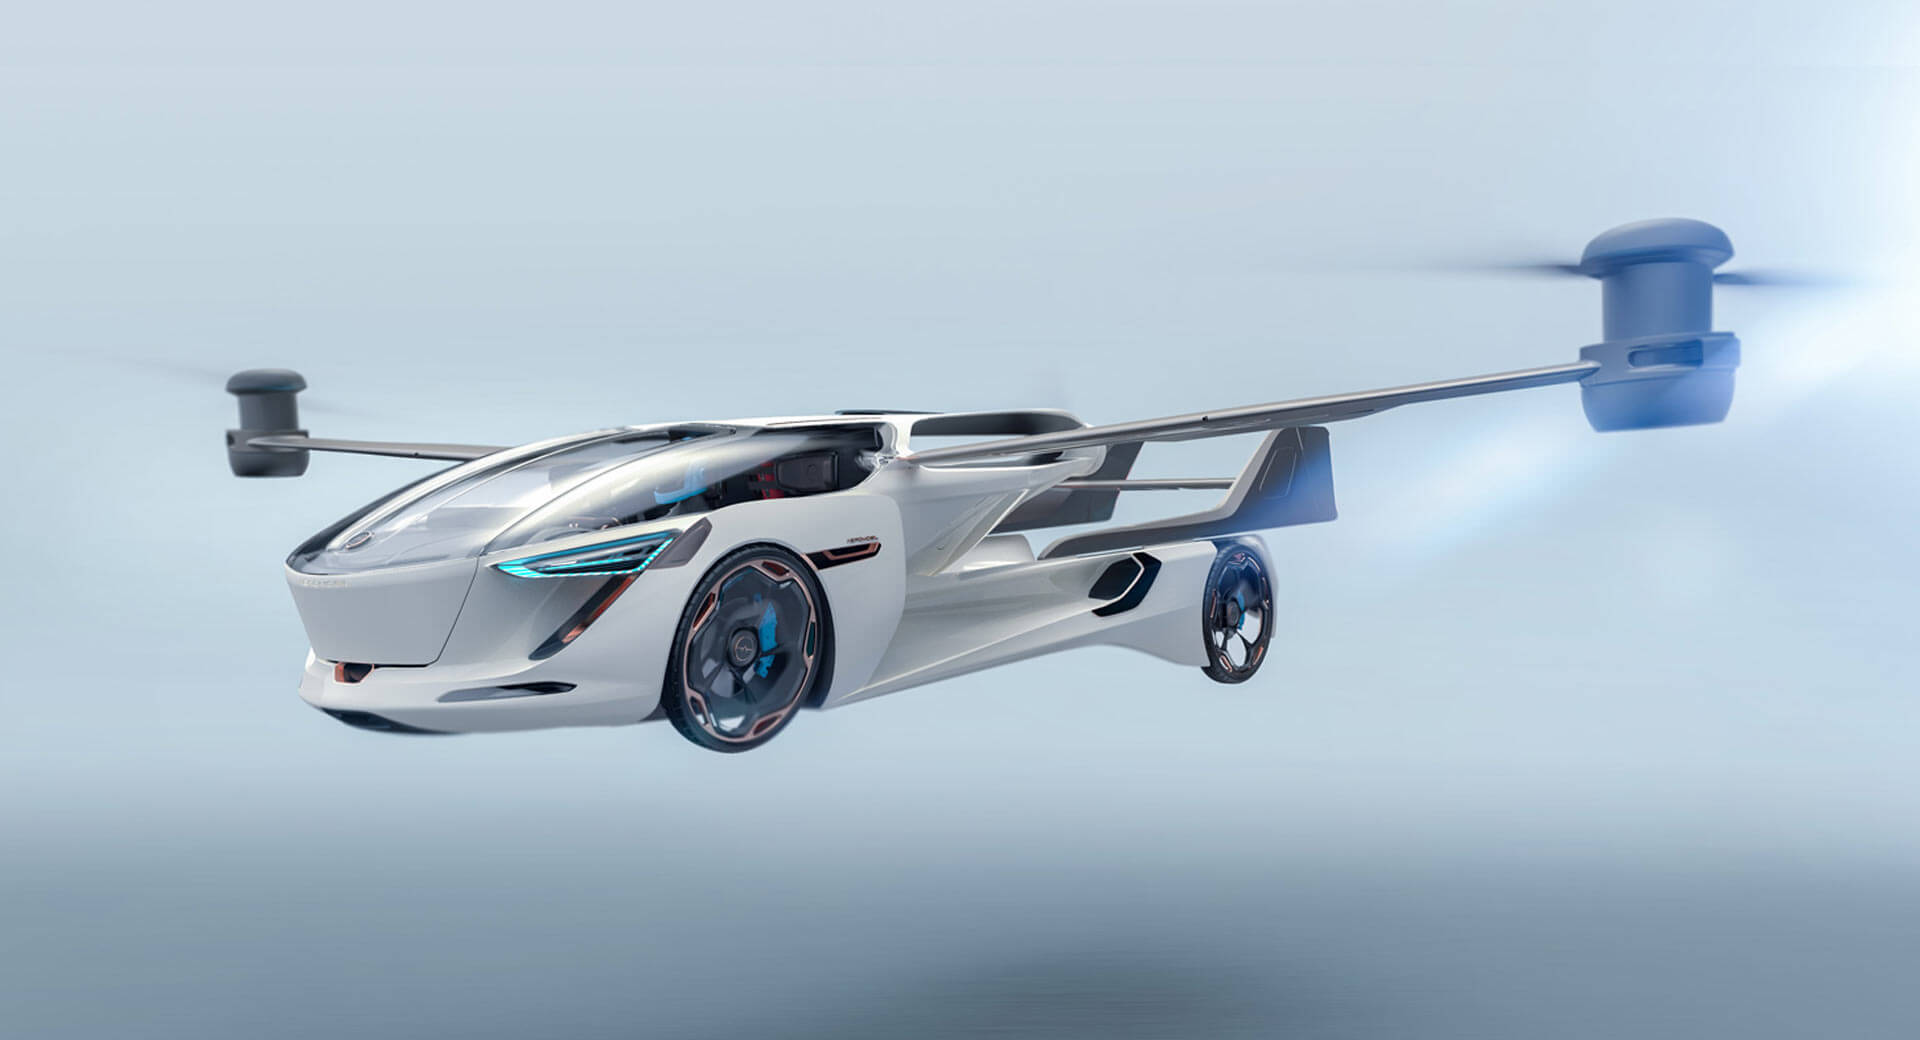 السيارة الطائرة إيروموبيل VTOL 5.0 تكشف نفسها من المستقبل 1